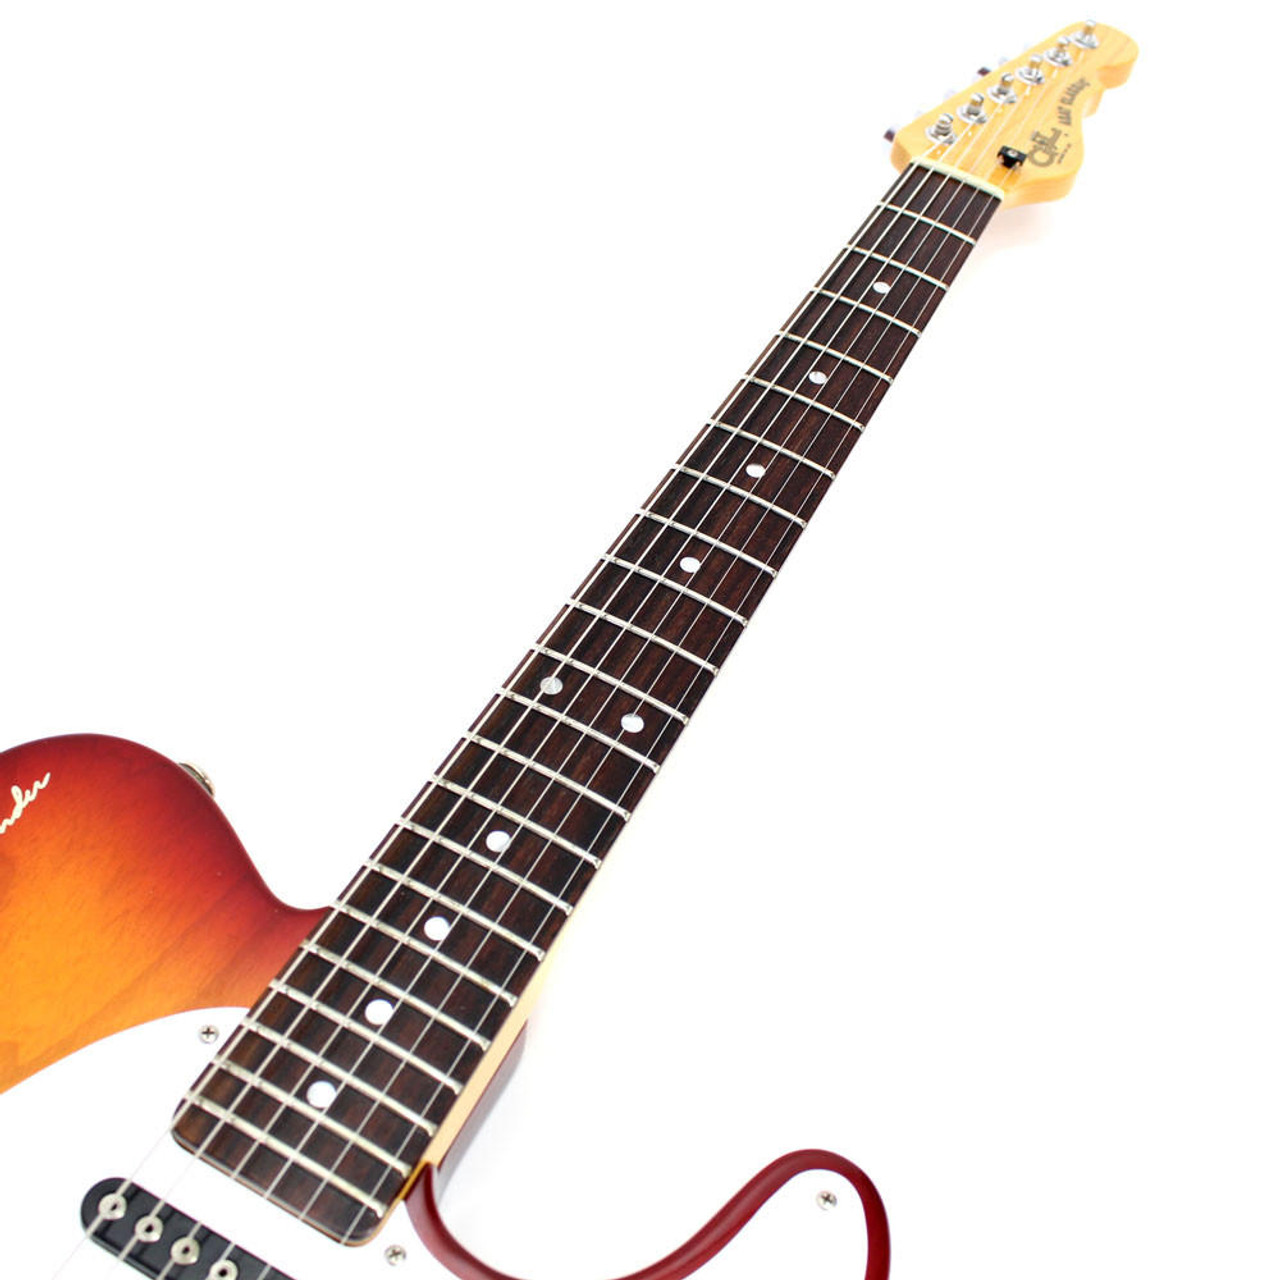 1991 USA Made G&L ASAT Classic Electric Guitar in Cherry Sunburst 